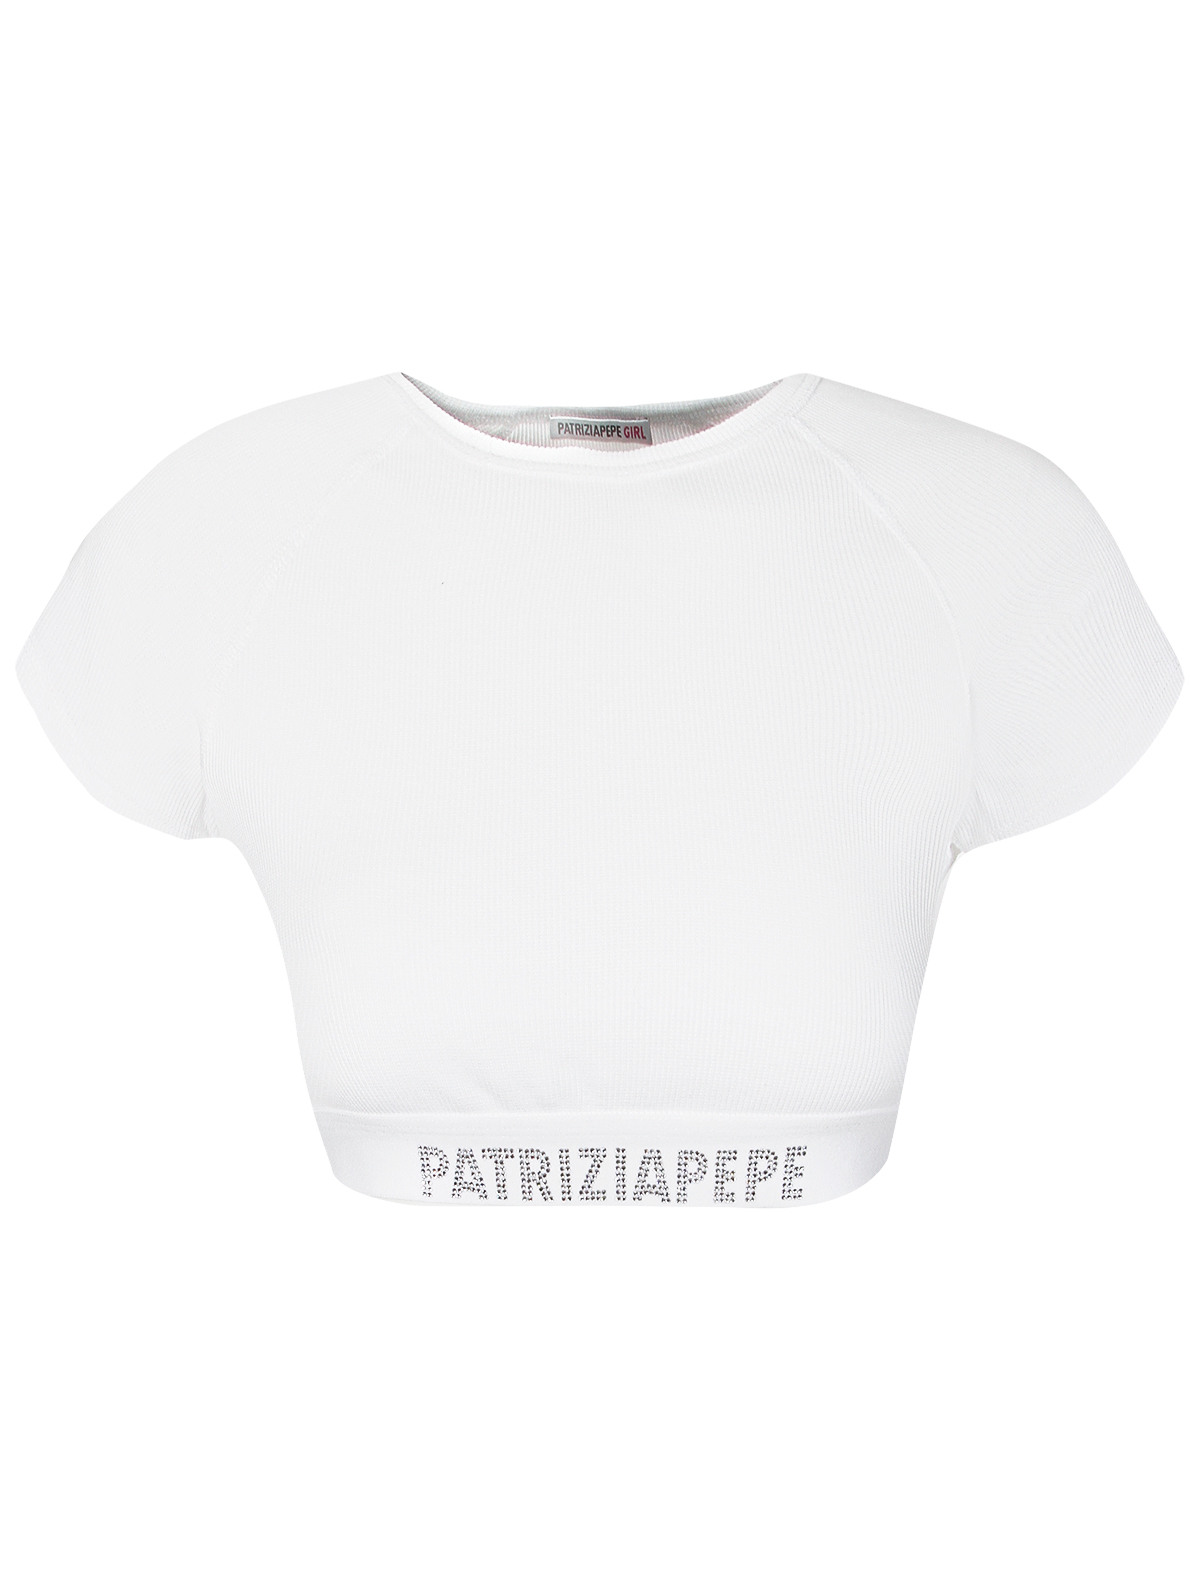 футболка patrizia pepe для девочки, белая